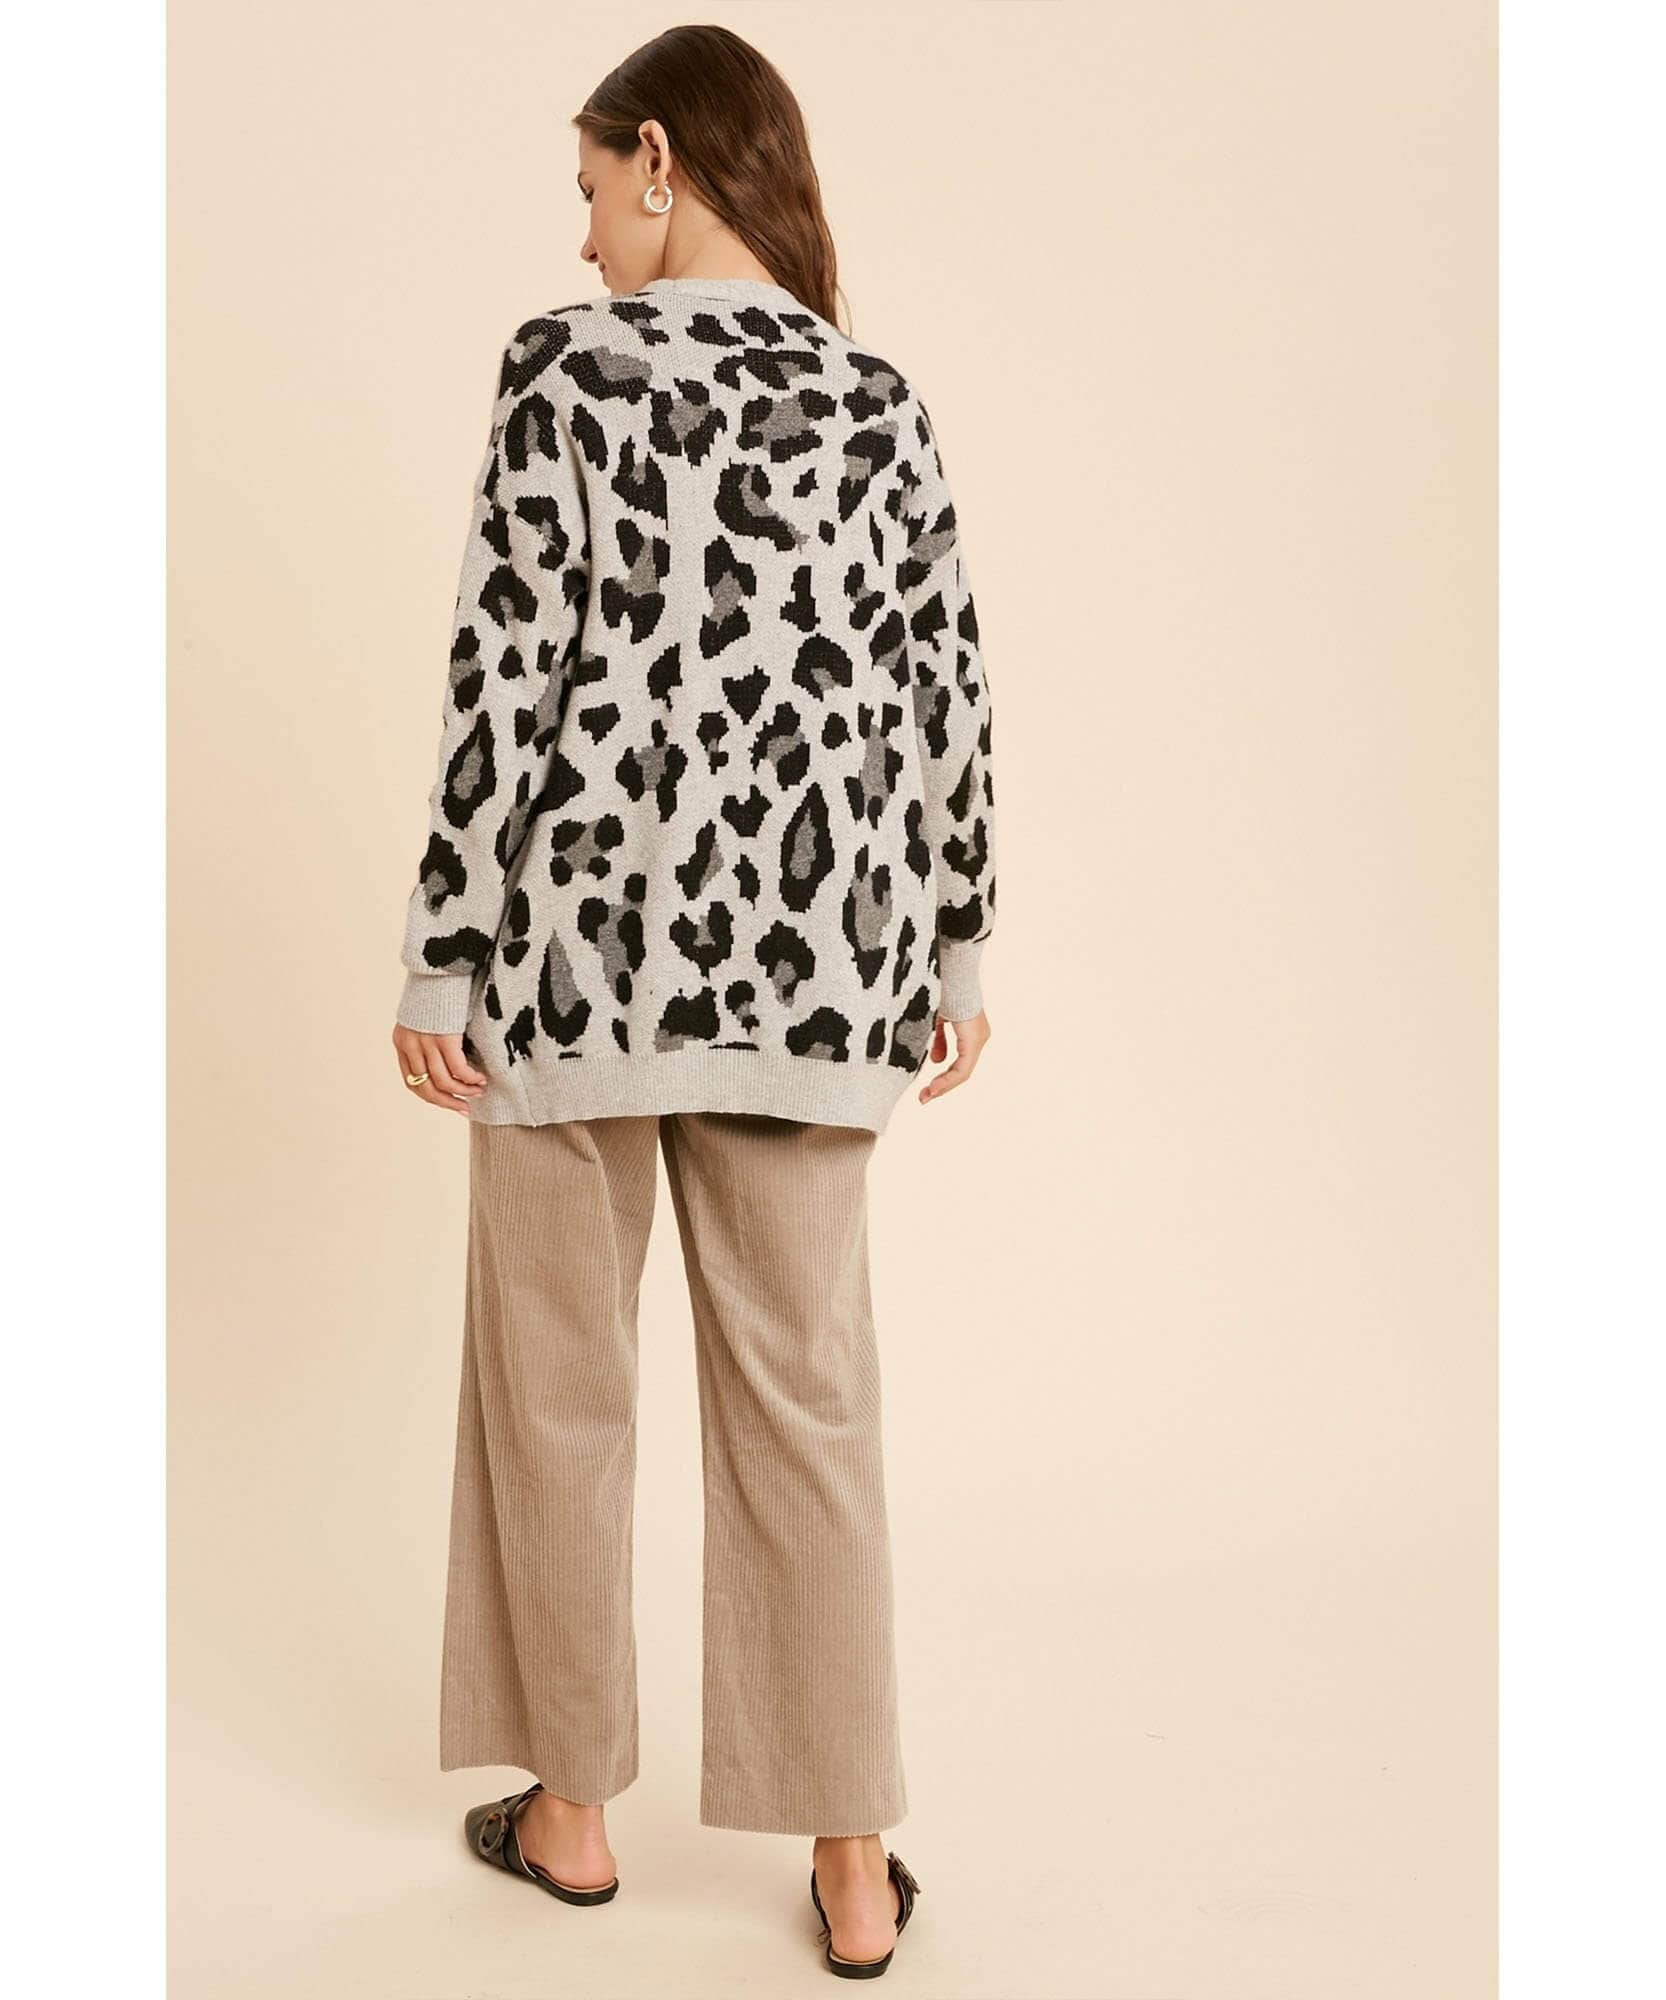 Fuzzy Leopard Cardigan With Pockets